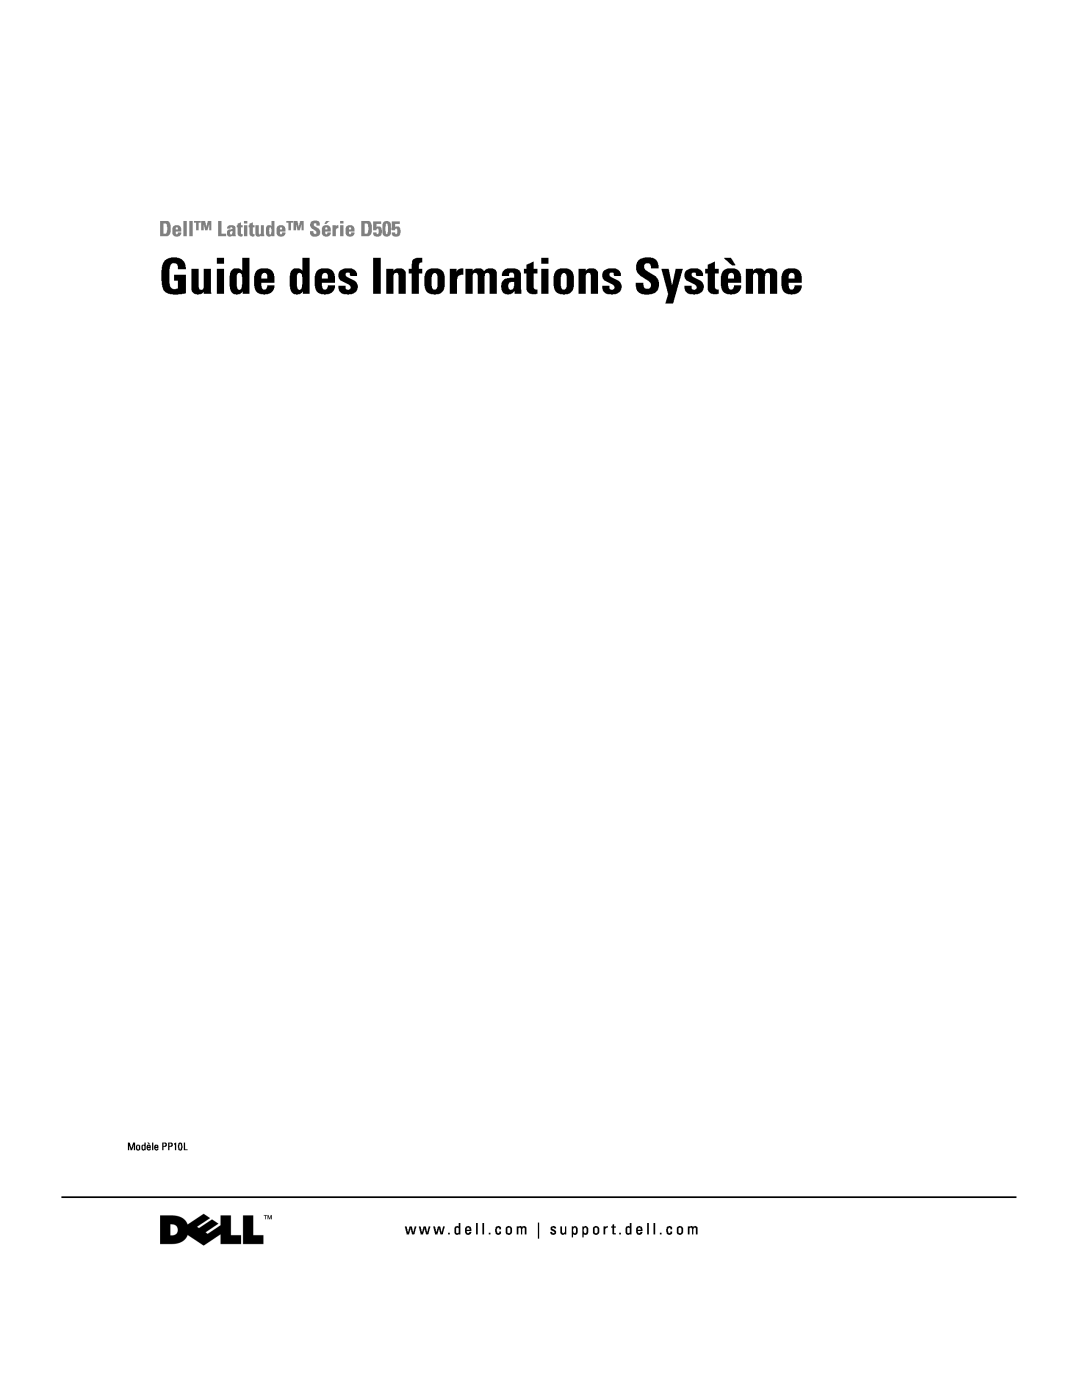 Dell manual Guide des Informations Système, Dell Latitude Série D505, Modèle PP10L 